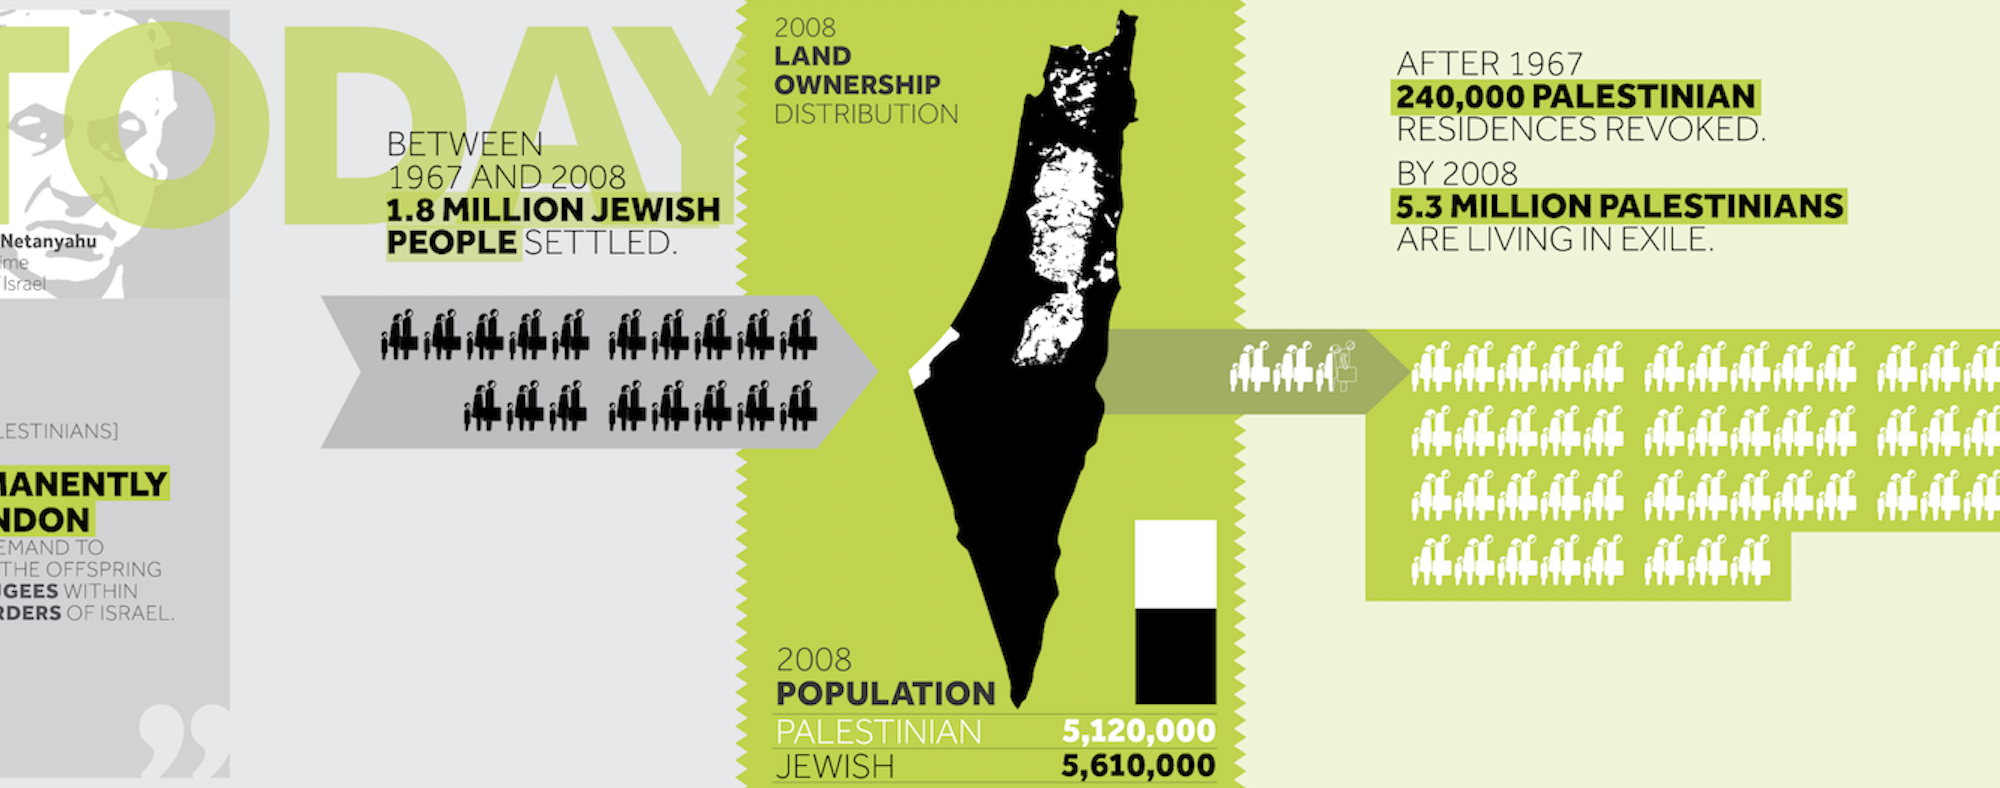 Detail uit de infographic over aanhoudende gedwongen ontheemding van Palestijnen